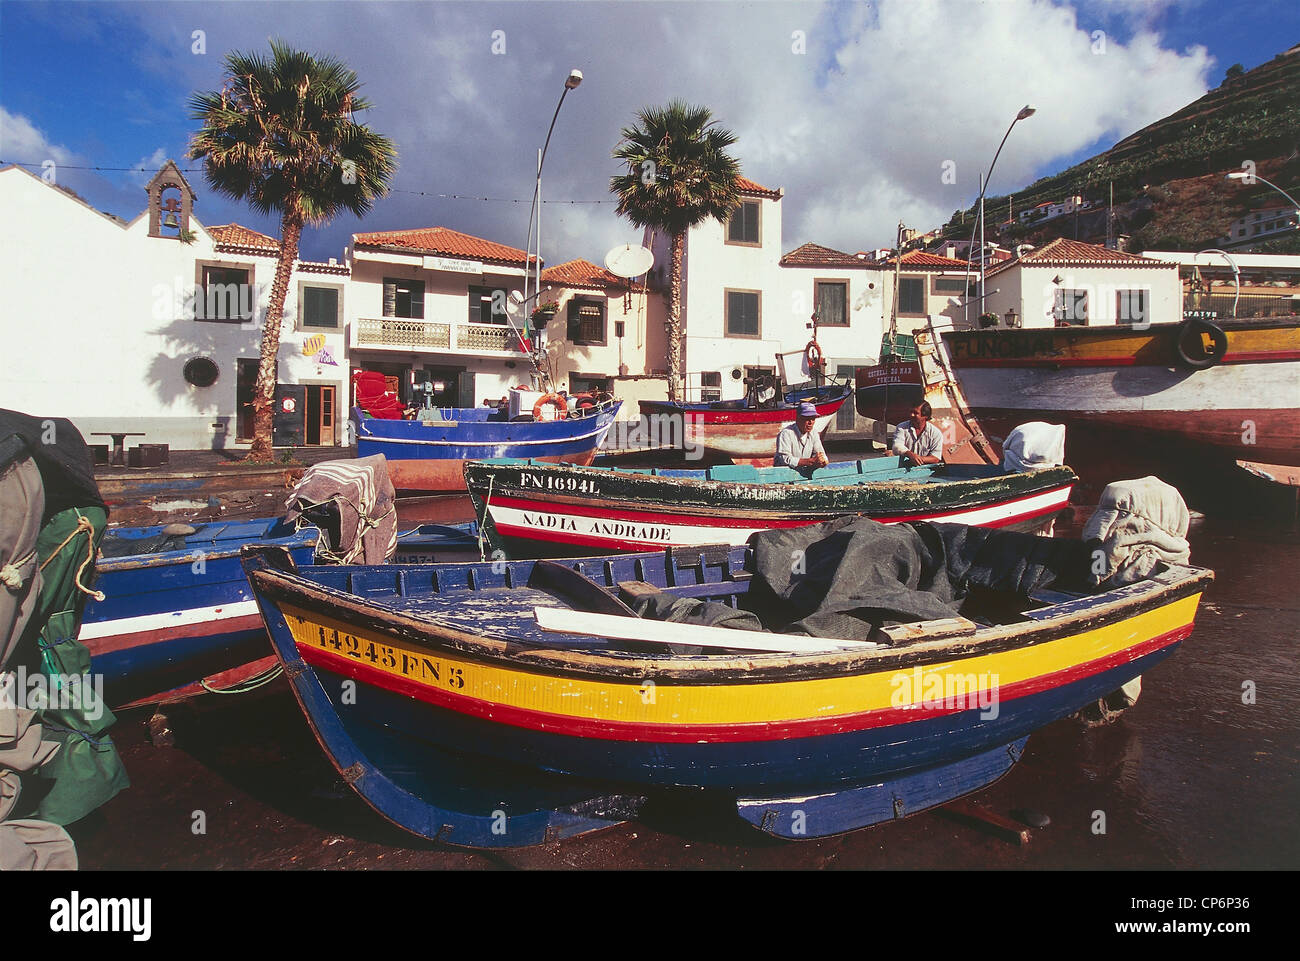 Portugal - Archipelago of Madeira - Madeira - Camara de Lobos - Boats aground on the beach Stock Photo